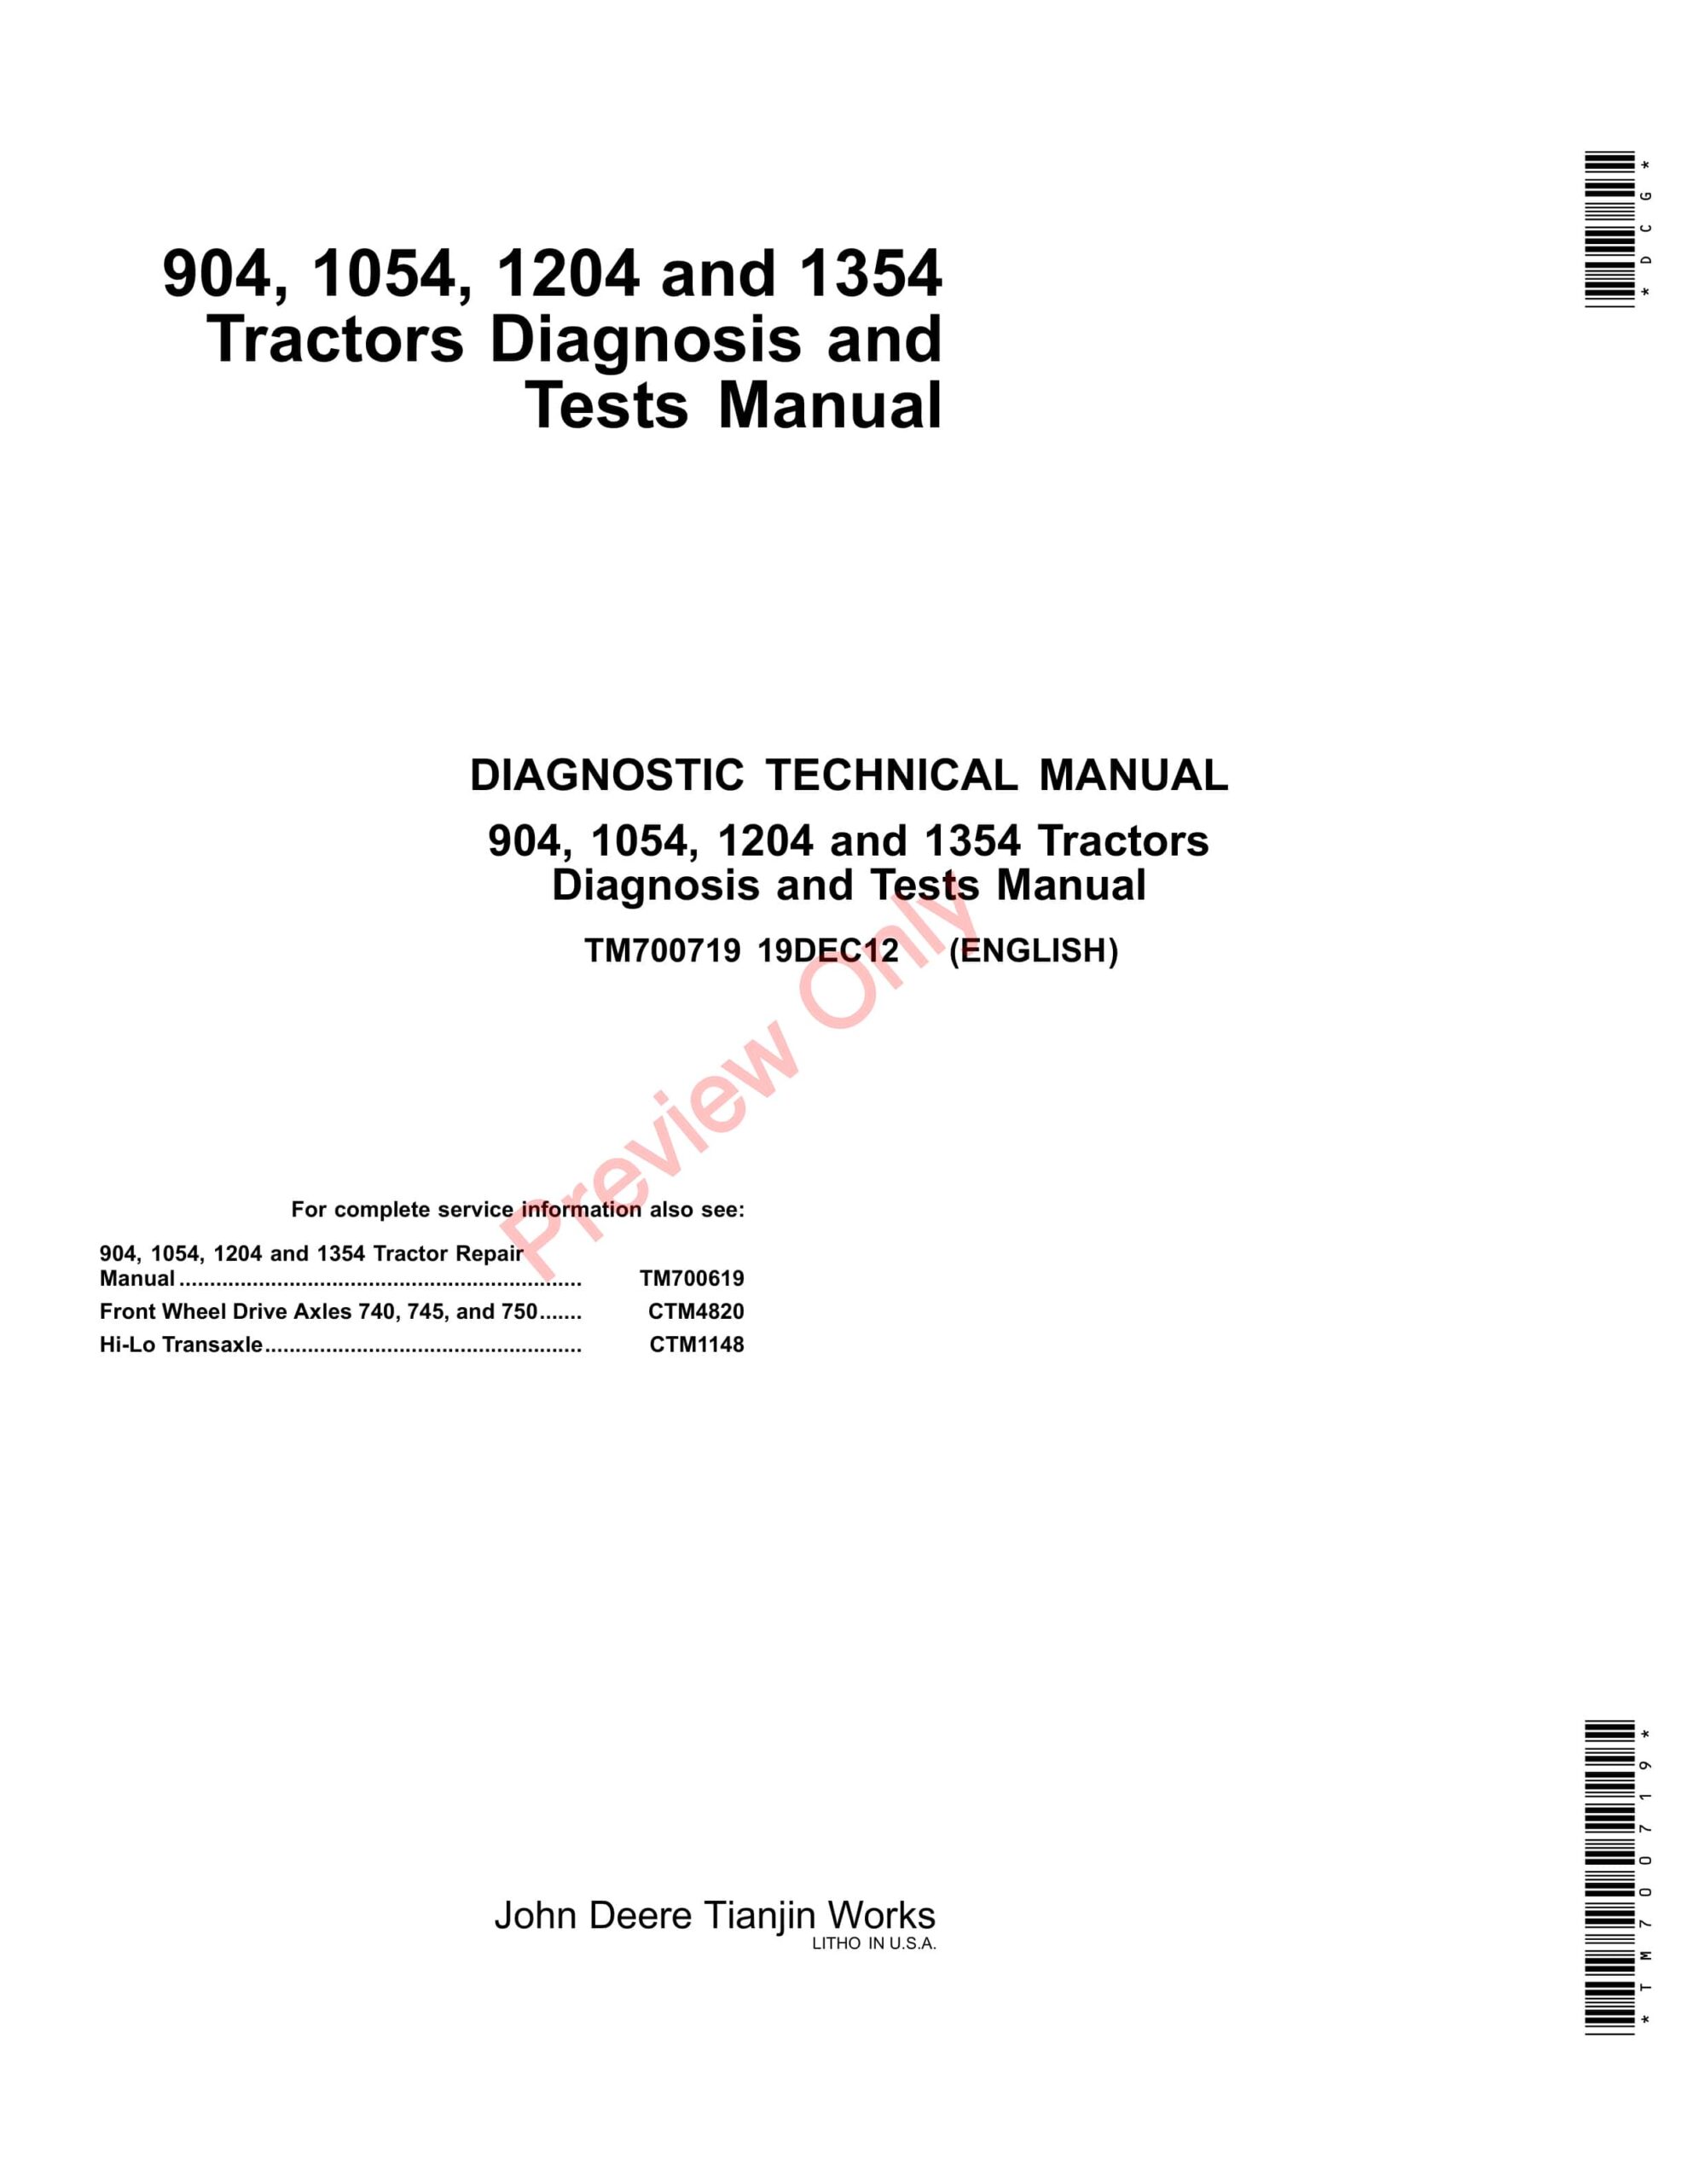 John Deere 904, 1054, 1204, and 1354 Tractors Diagnostic Technical Manual TM700719 19DEC12-1